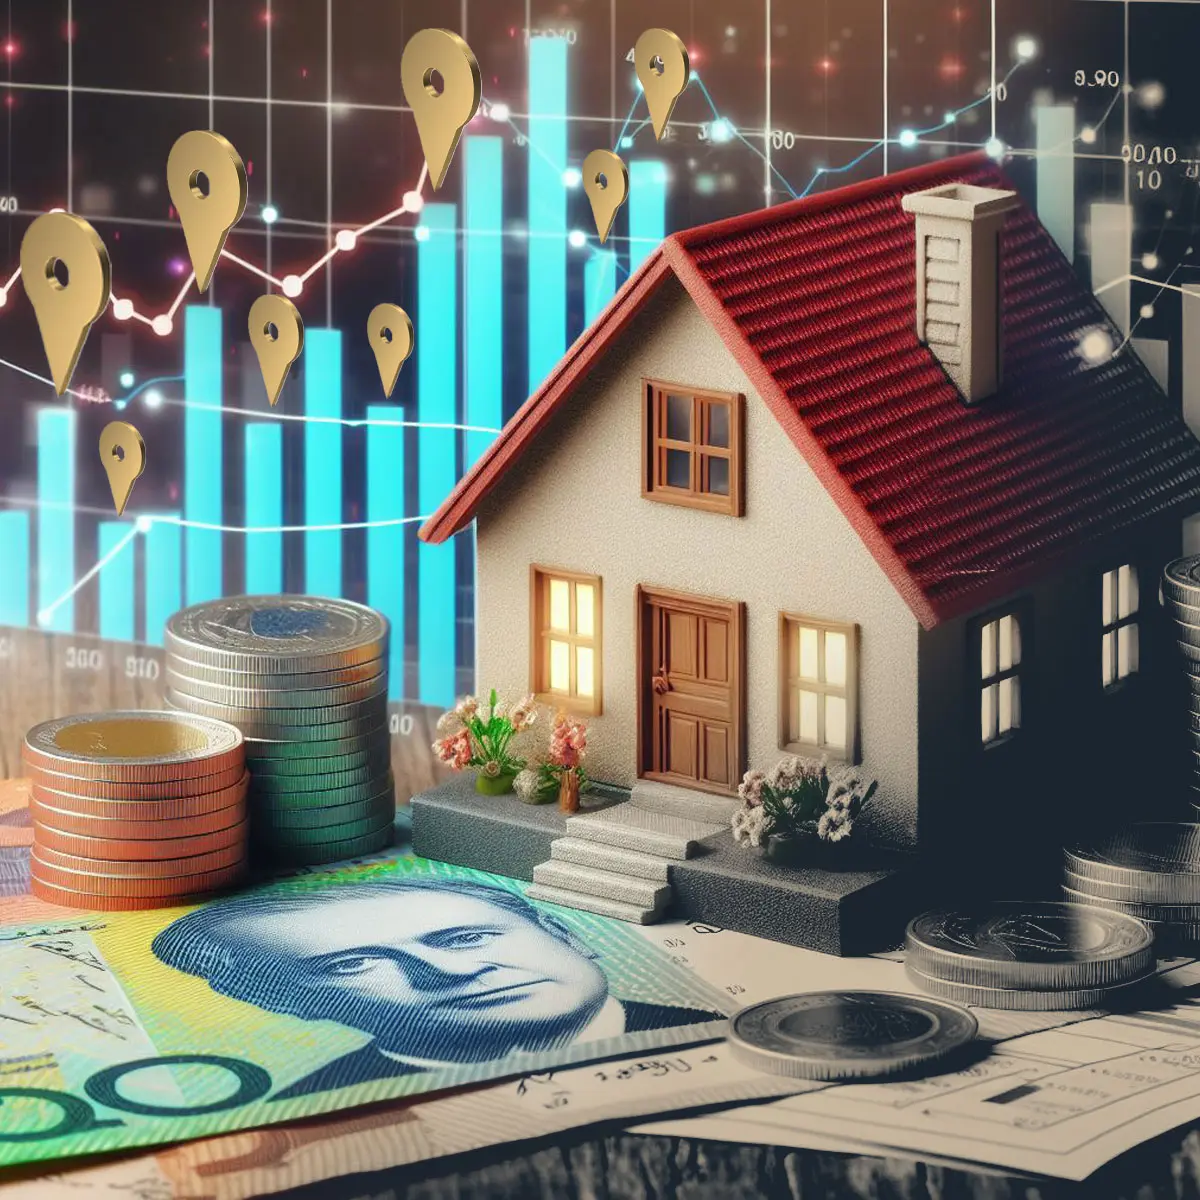 تفاوت قیمت خانه در استرالیا بر اساس منطقه شهری